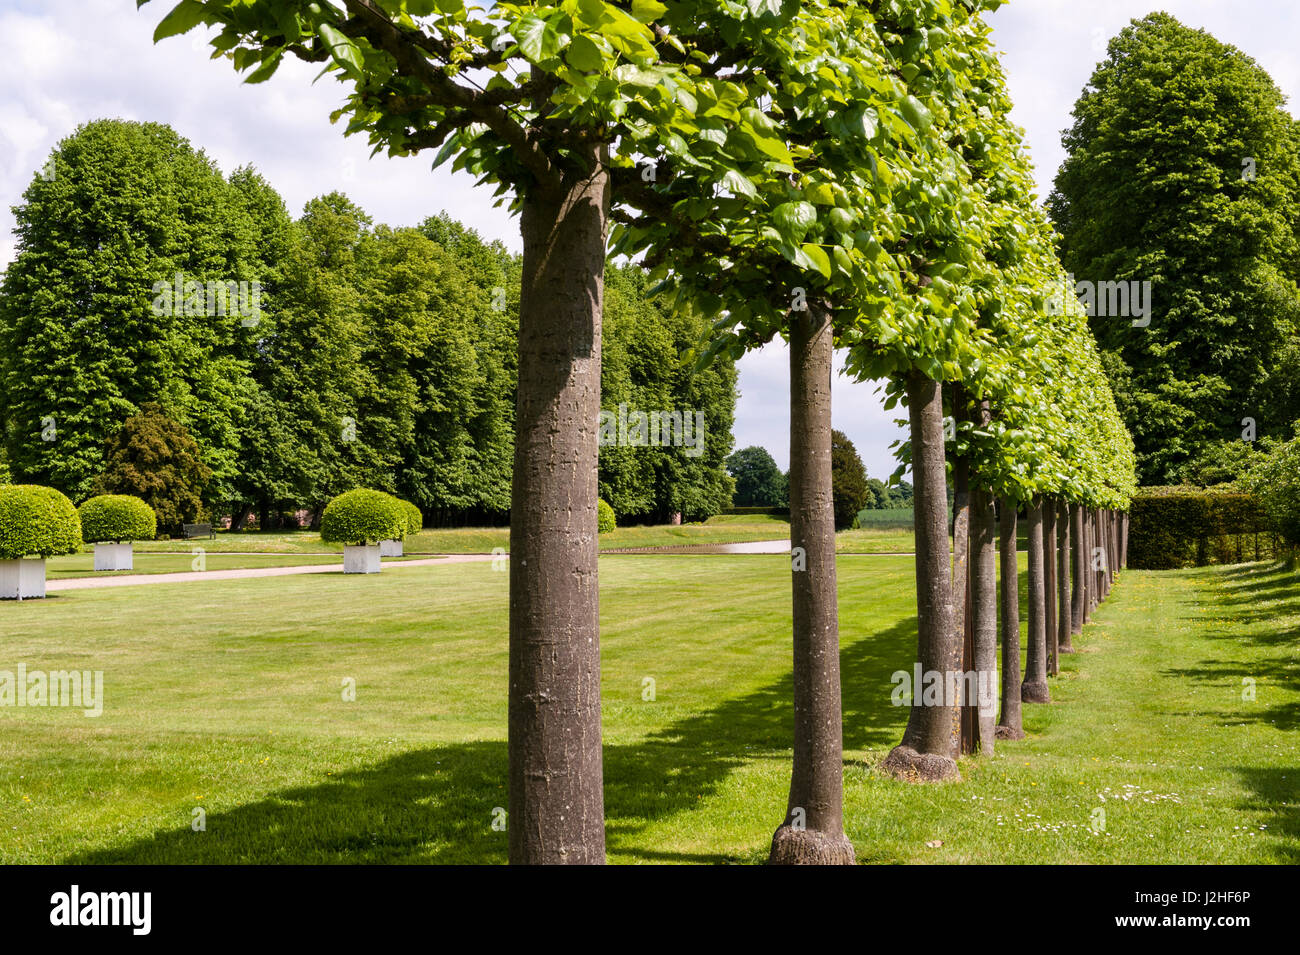 Erddig Hall gardens, Wrexham, Wales, UK. Une allée de tilleuls (tilia pleached) dans le jardin restauré Banque D'Images